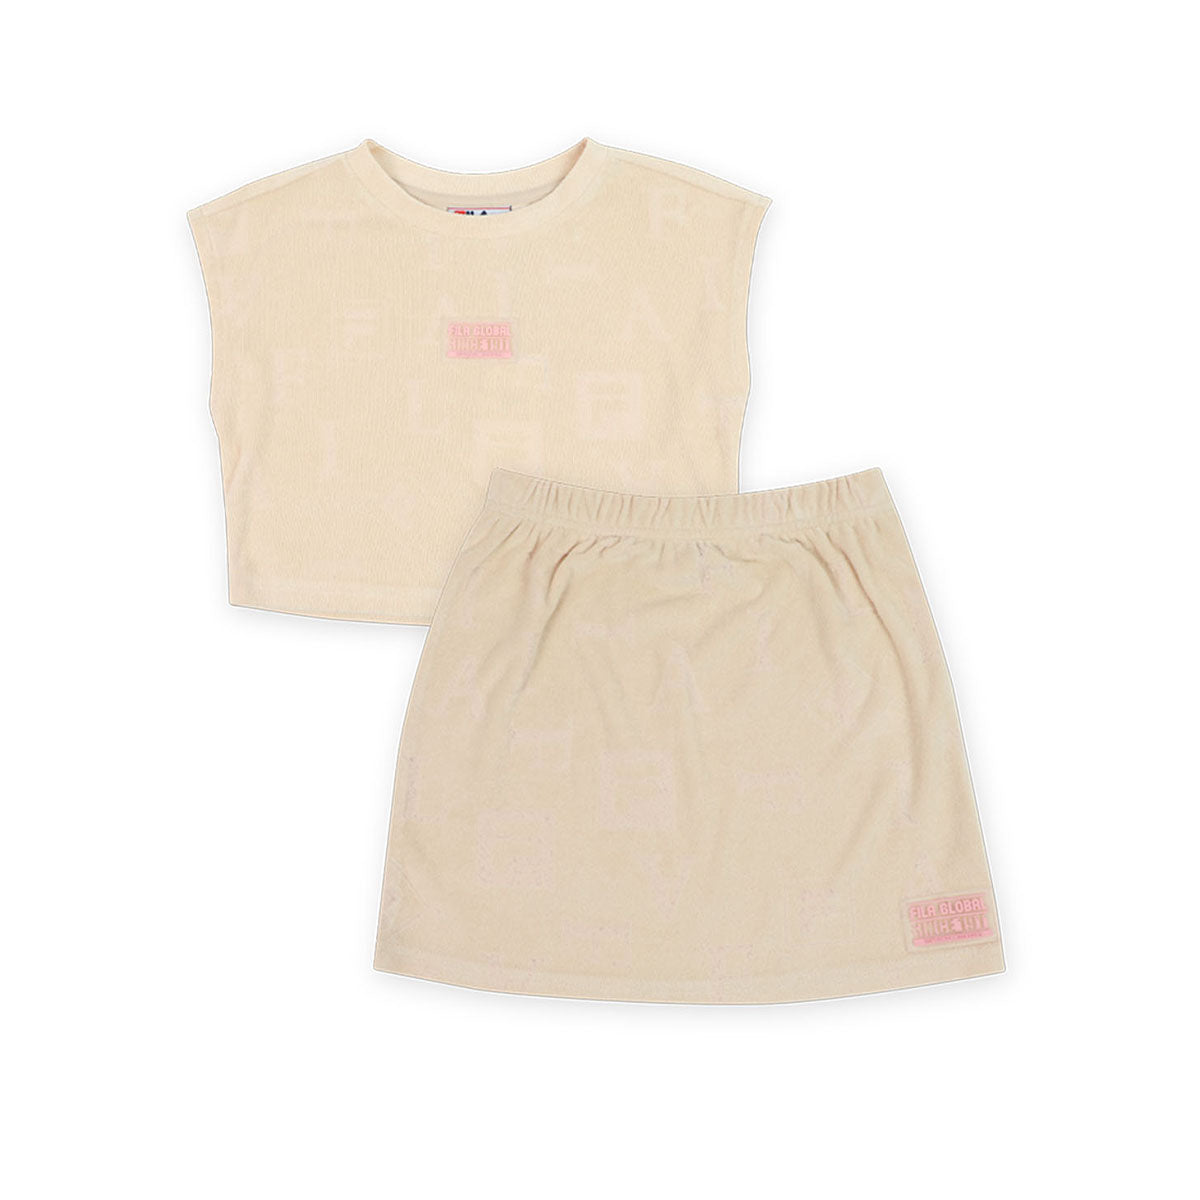 חליפת חצאית FILA קטיפה הדפס מצויר במרכז צבע לבן לילדות